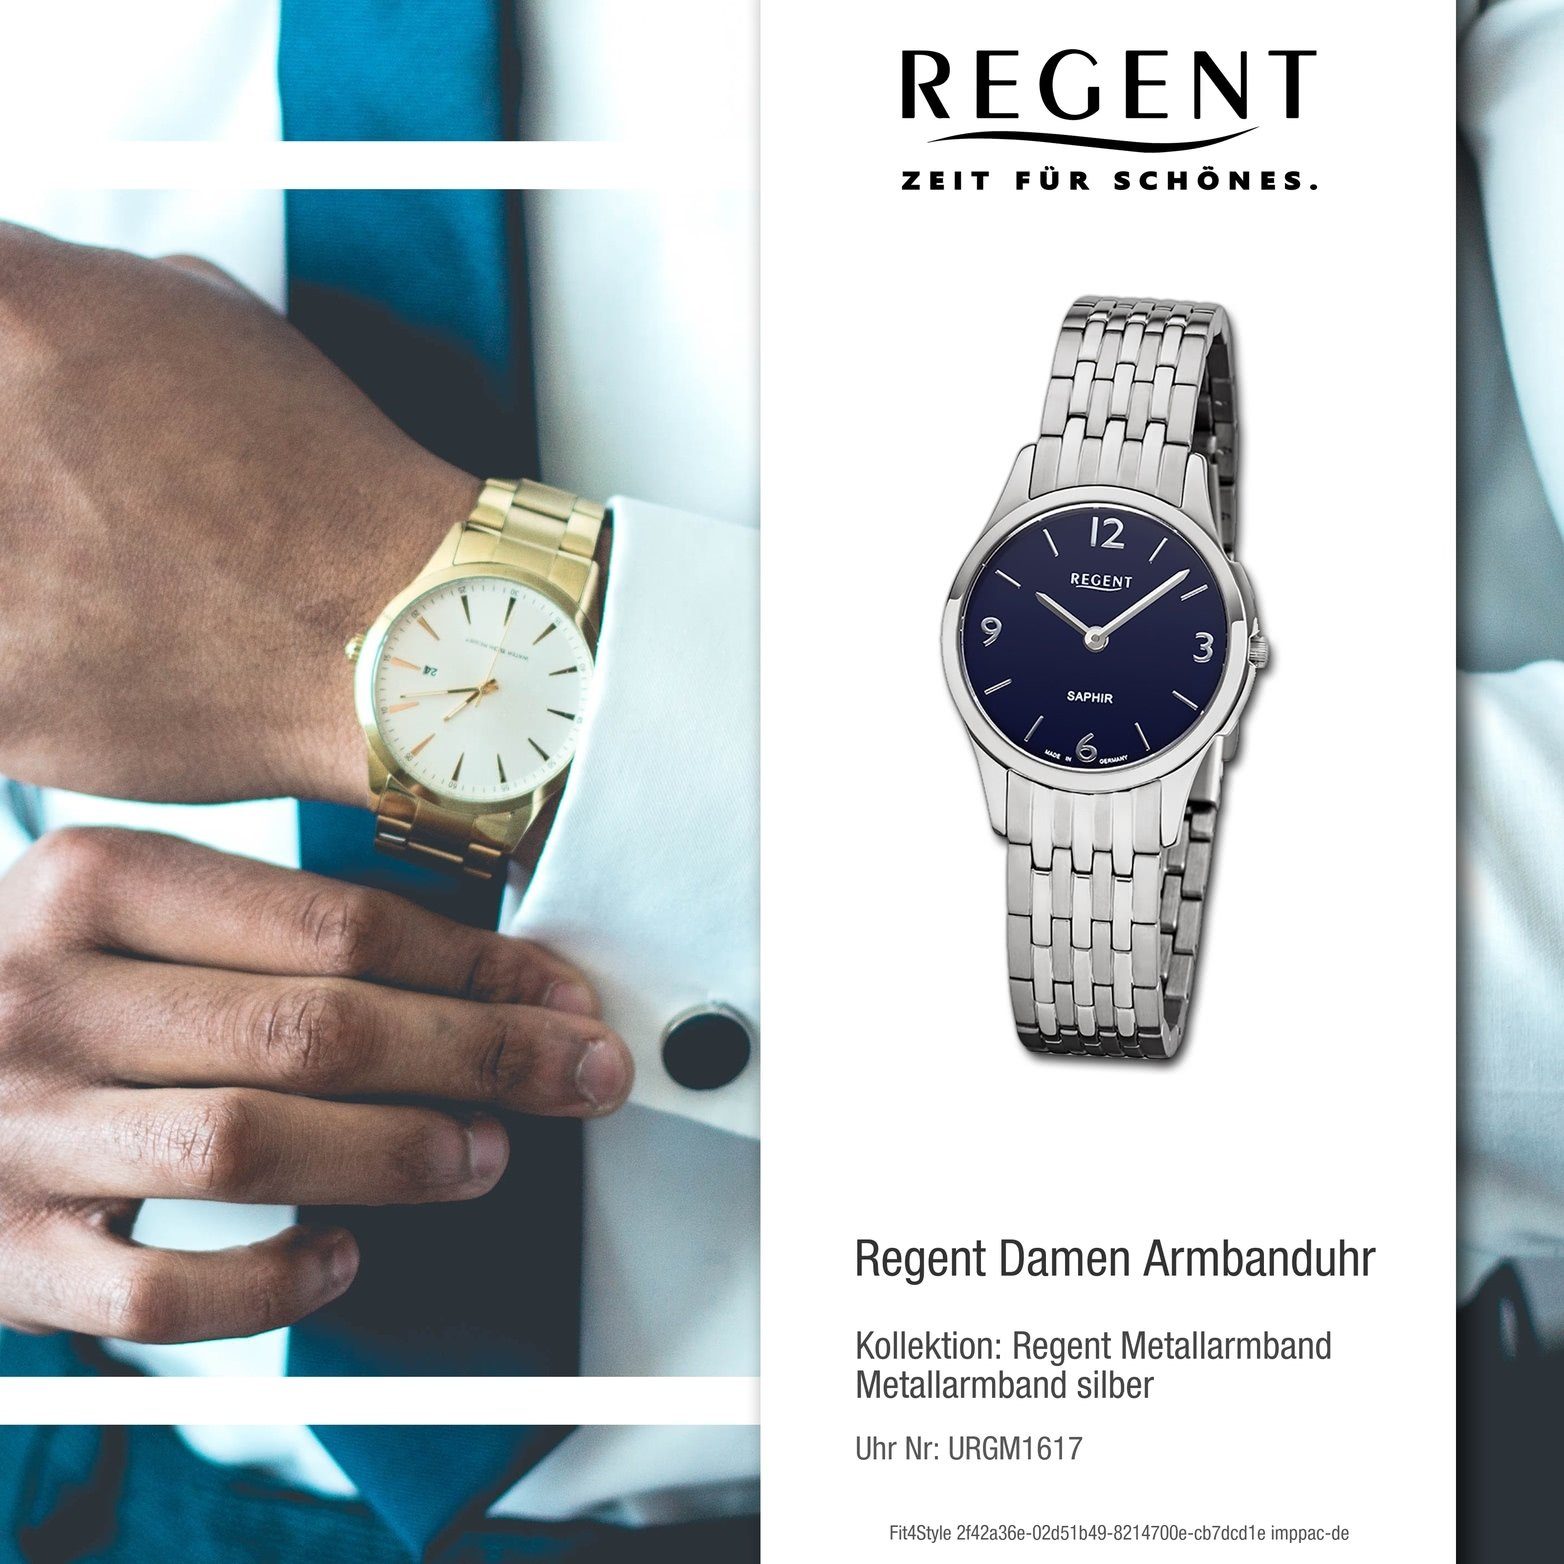 Gehäuse, Analog, GM-1617 rundes Uhr (ca. Metall Damen Quarzuhr klein Metallarmband, Regent Regent Damenuhr blau 28mm),